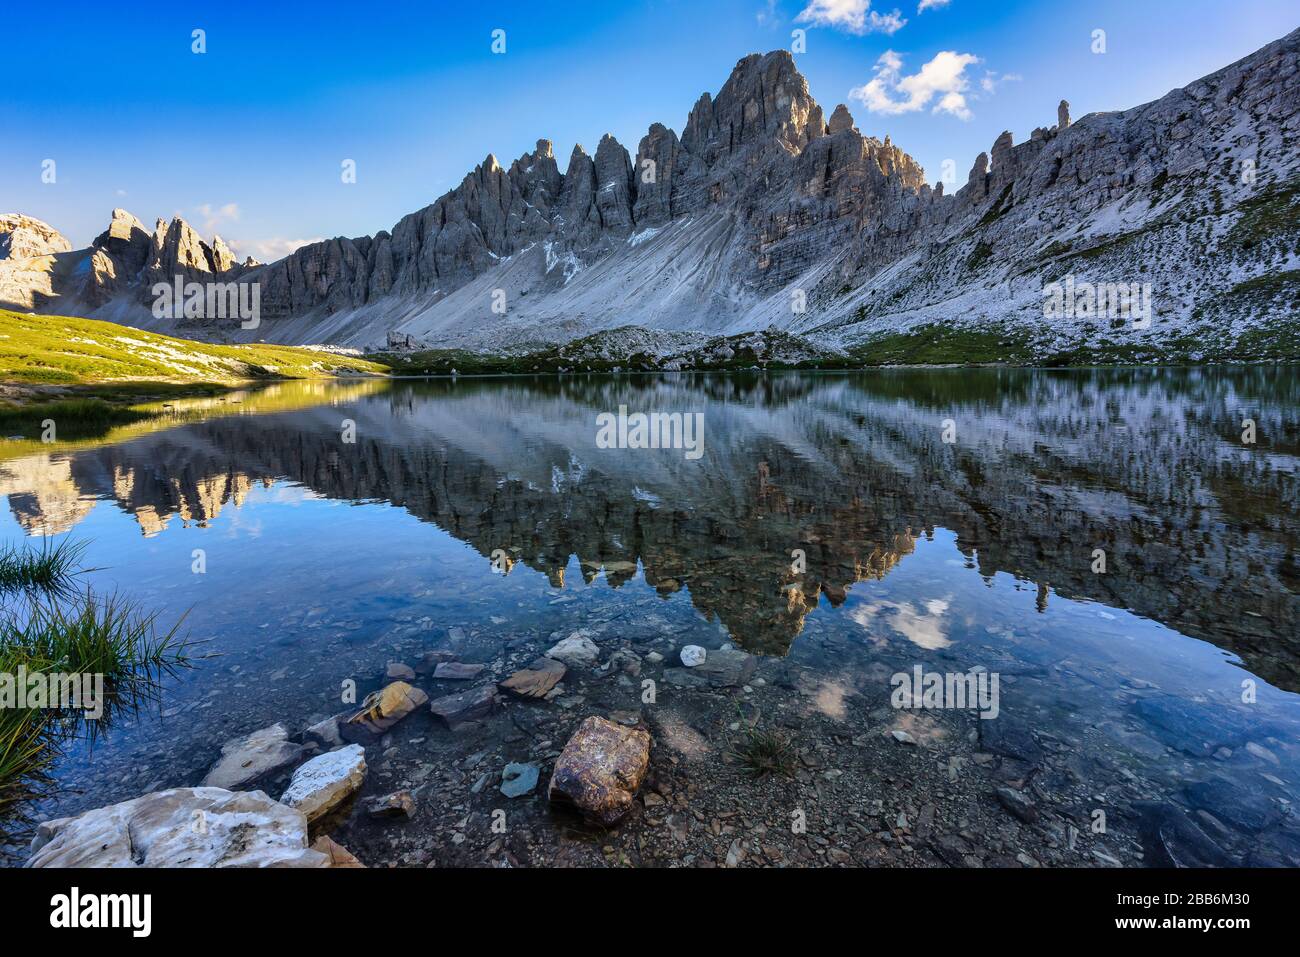 Monte Paterno Reflection in Lago dei Piani, parc naturel de Tre cime, Dolomites, Italie Banque D'Images